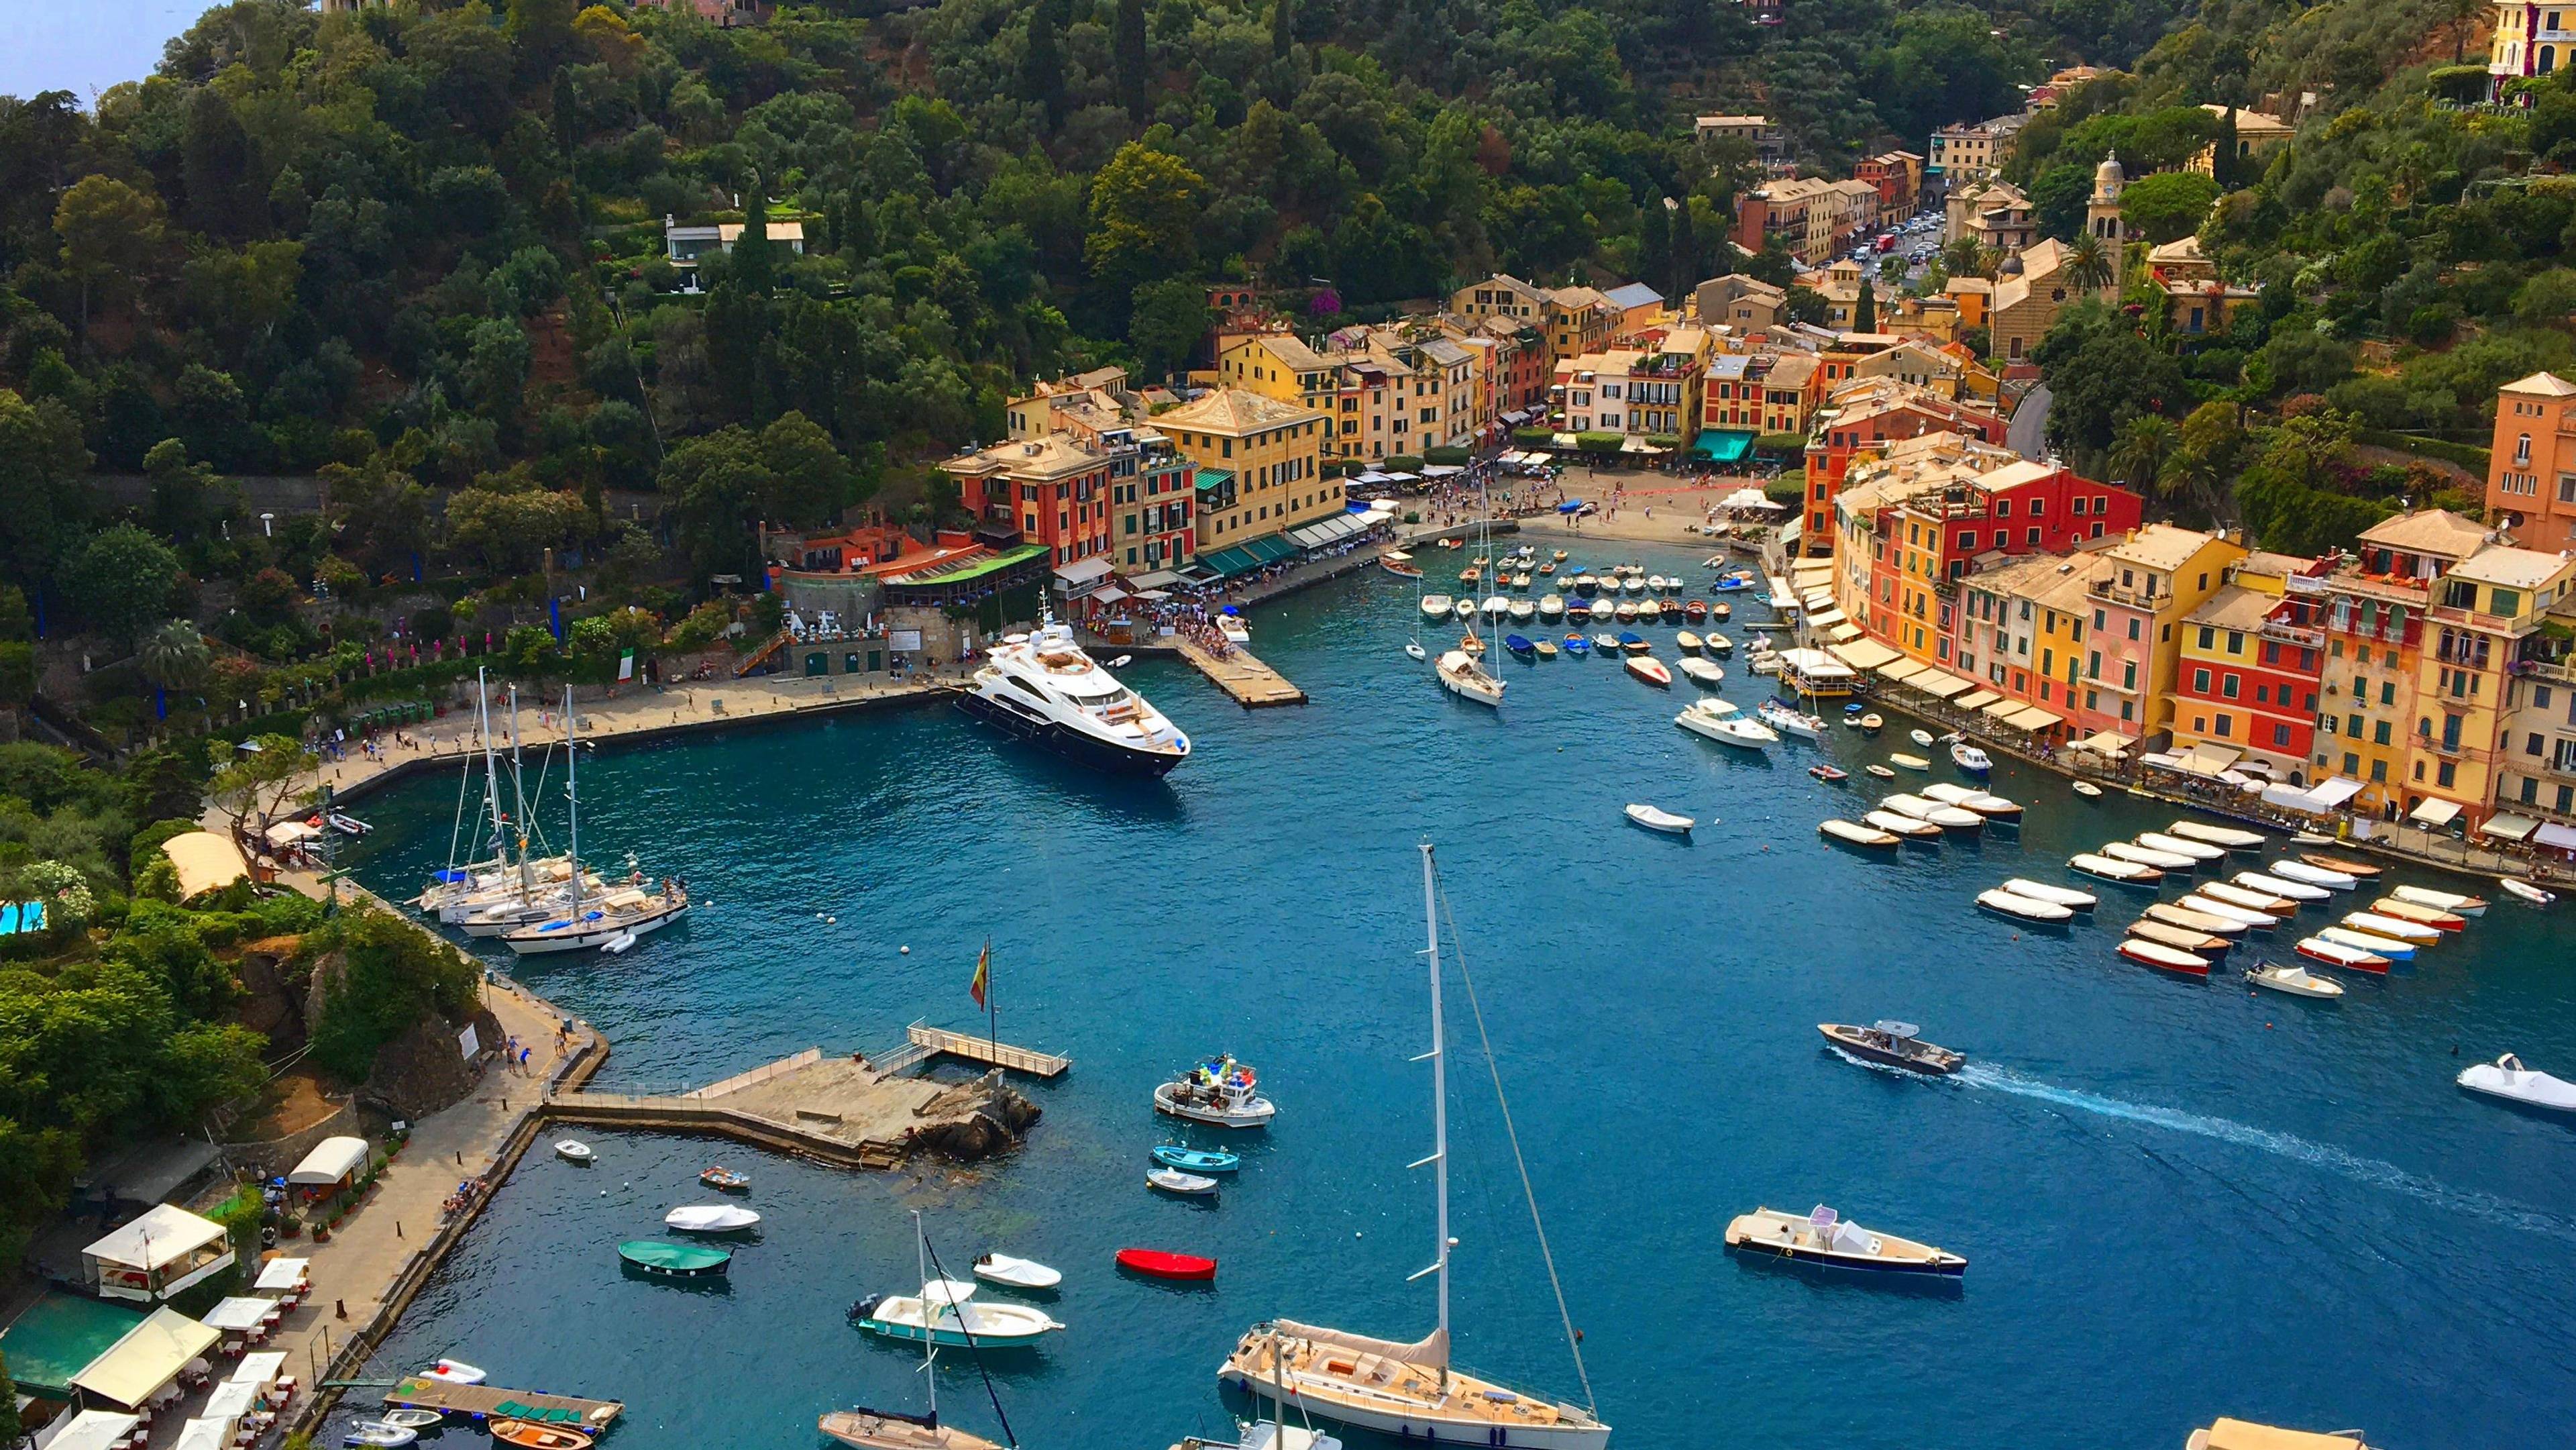 Discover the Beautiful Town of Portofino